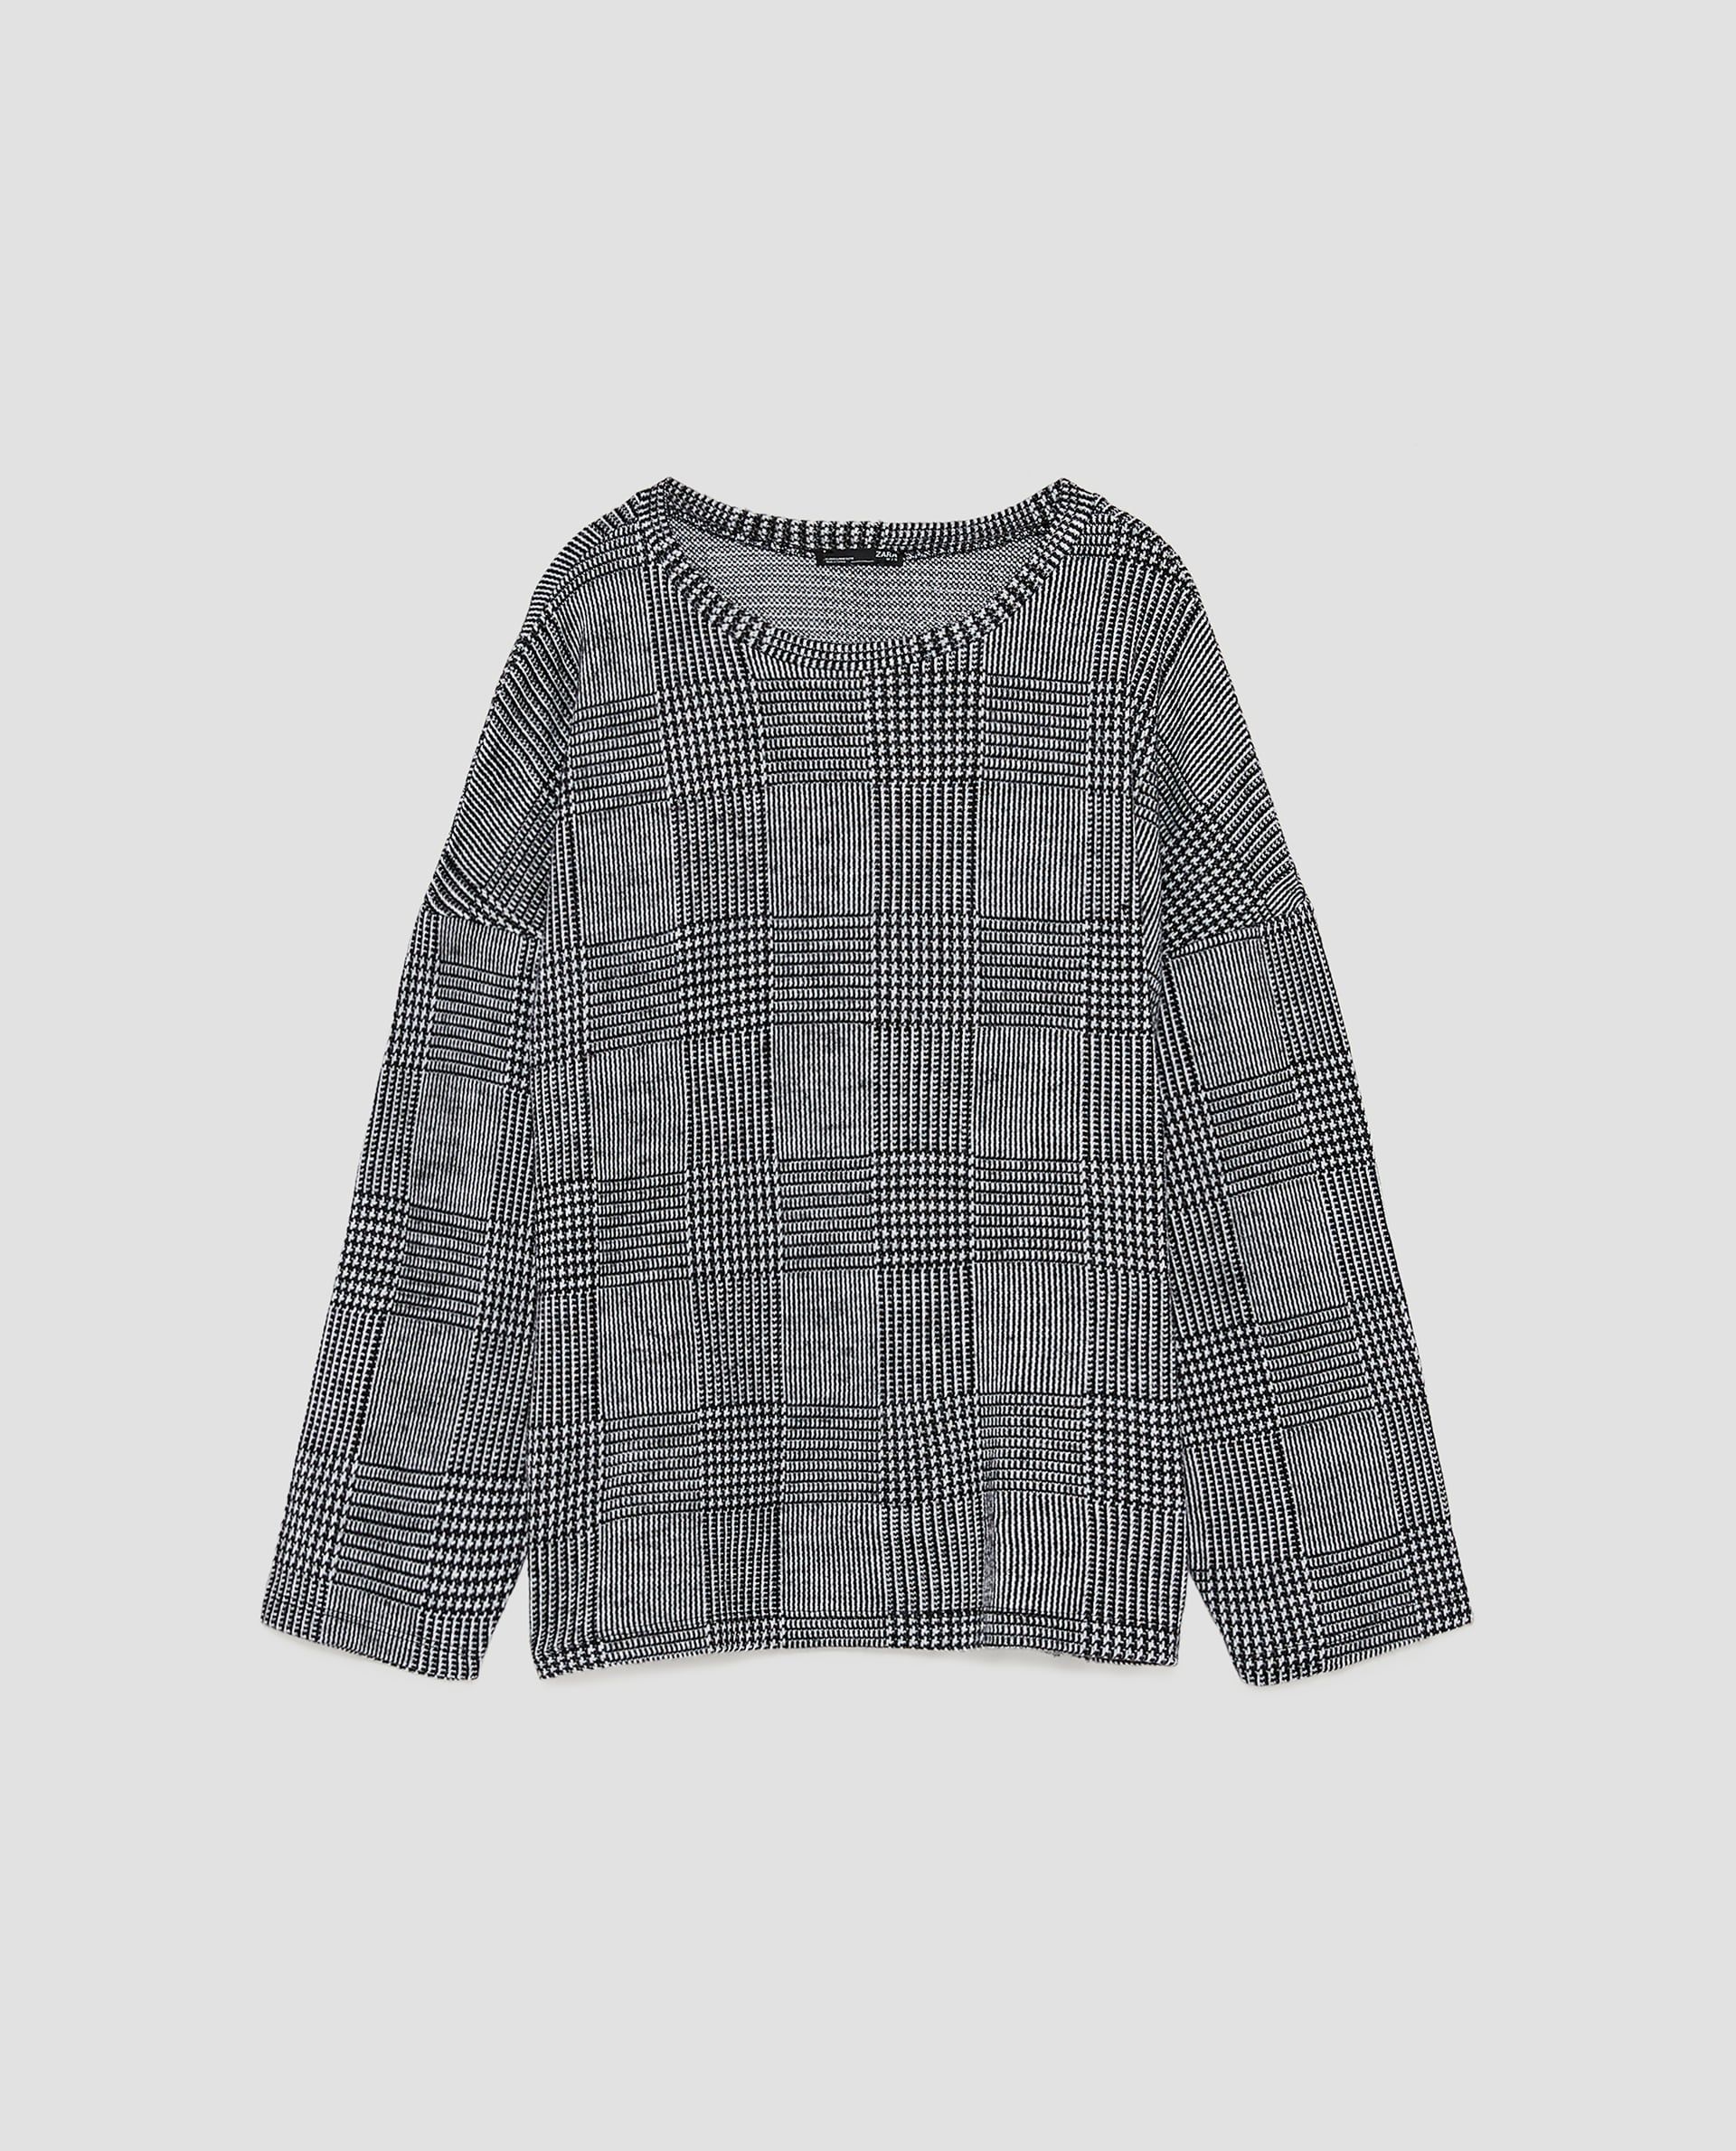 8-zara-check-sweaterdetails-379c501935ece383f6738a0ccfe72311.jpg